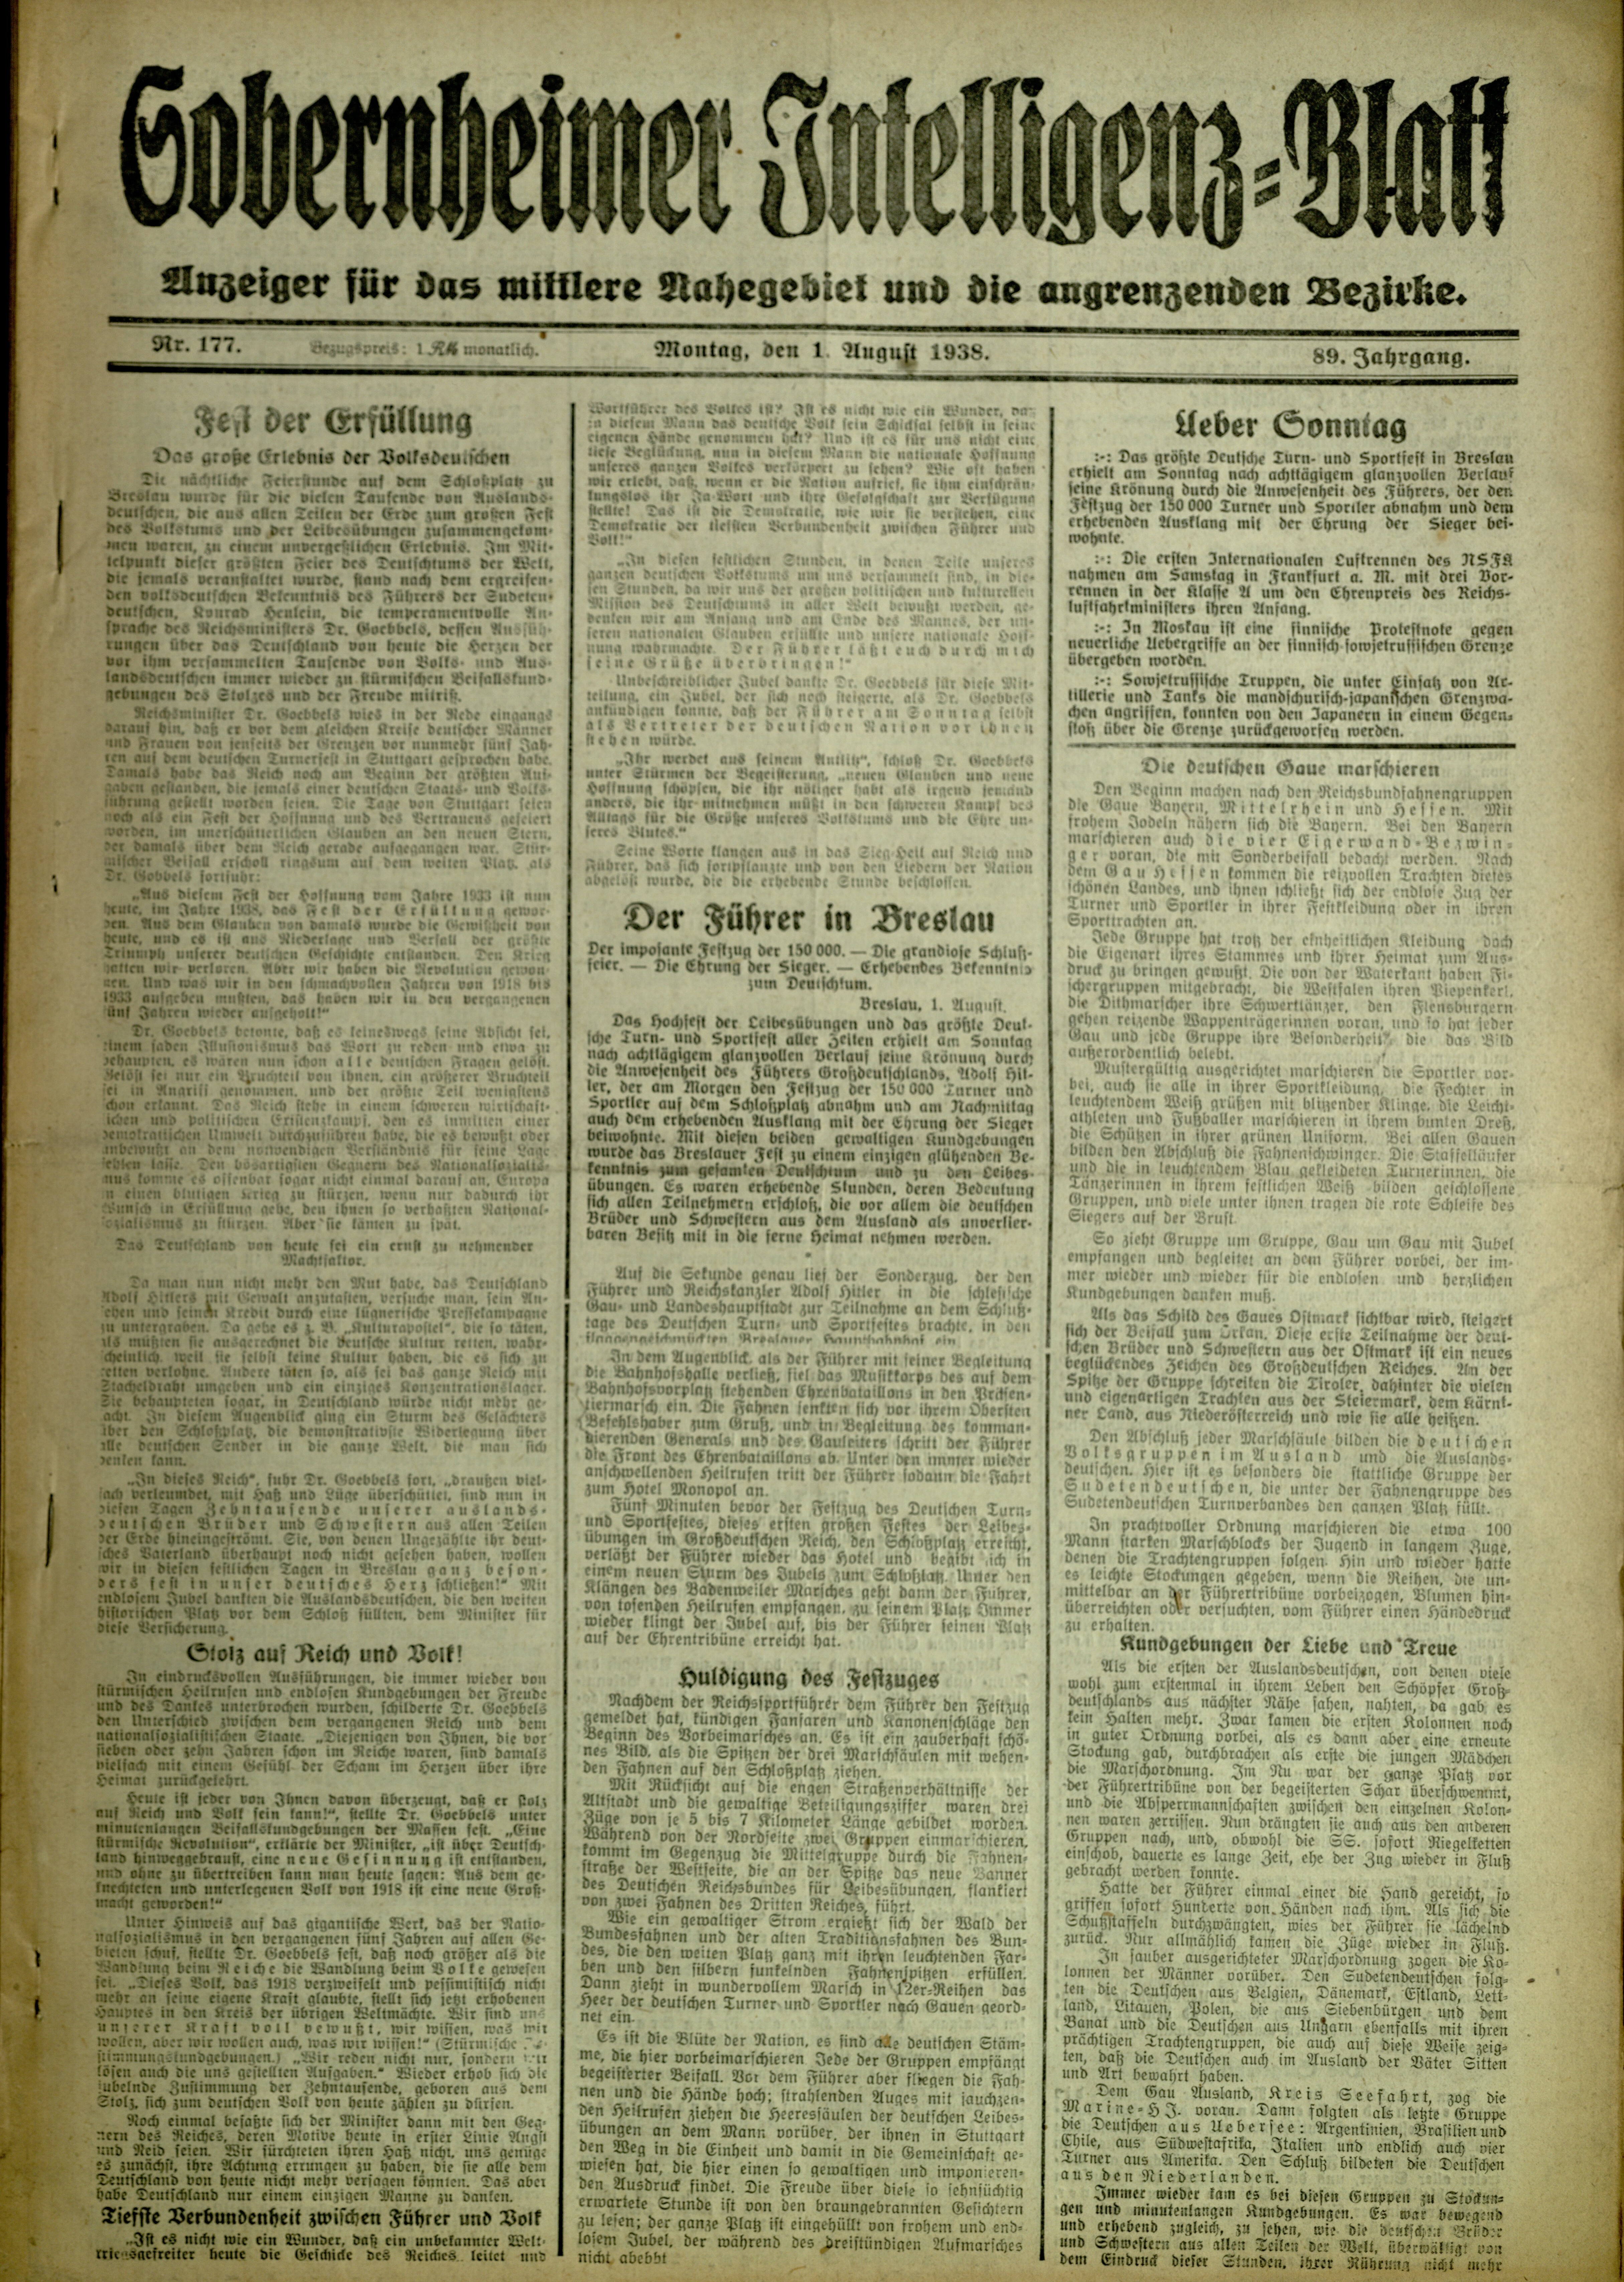 Zeitung: Sobernheimer Intelligenzblatt; August 1938, Jg. 88 Nr. 177 (Heimatmuseum Bad Sobernheim CC BY-NC-SA)